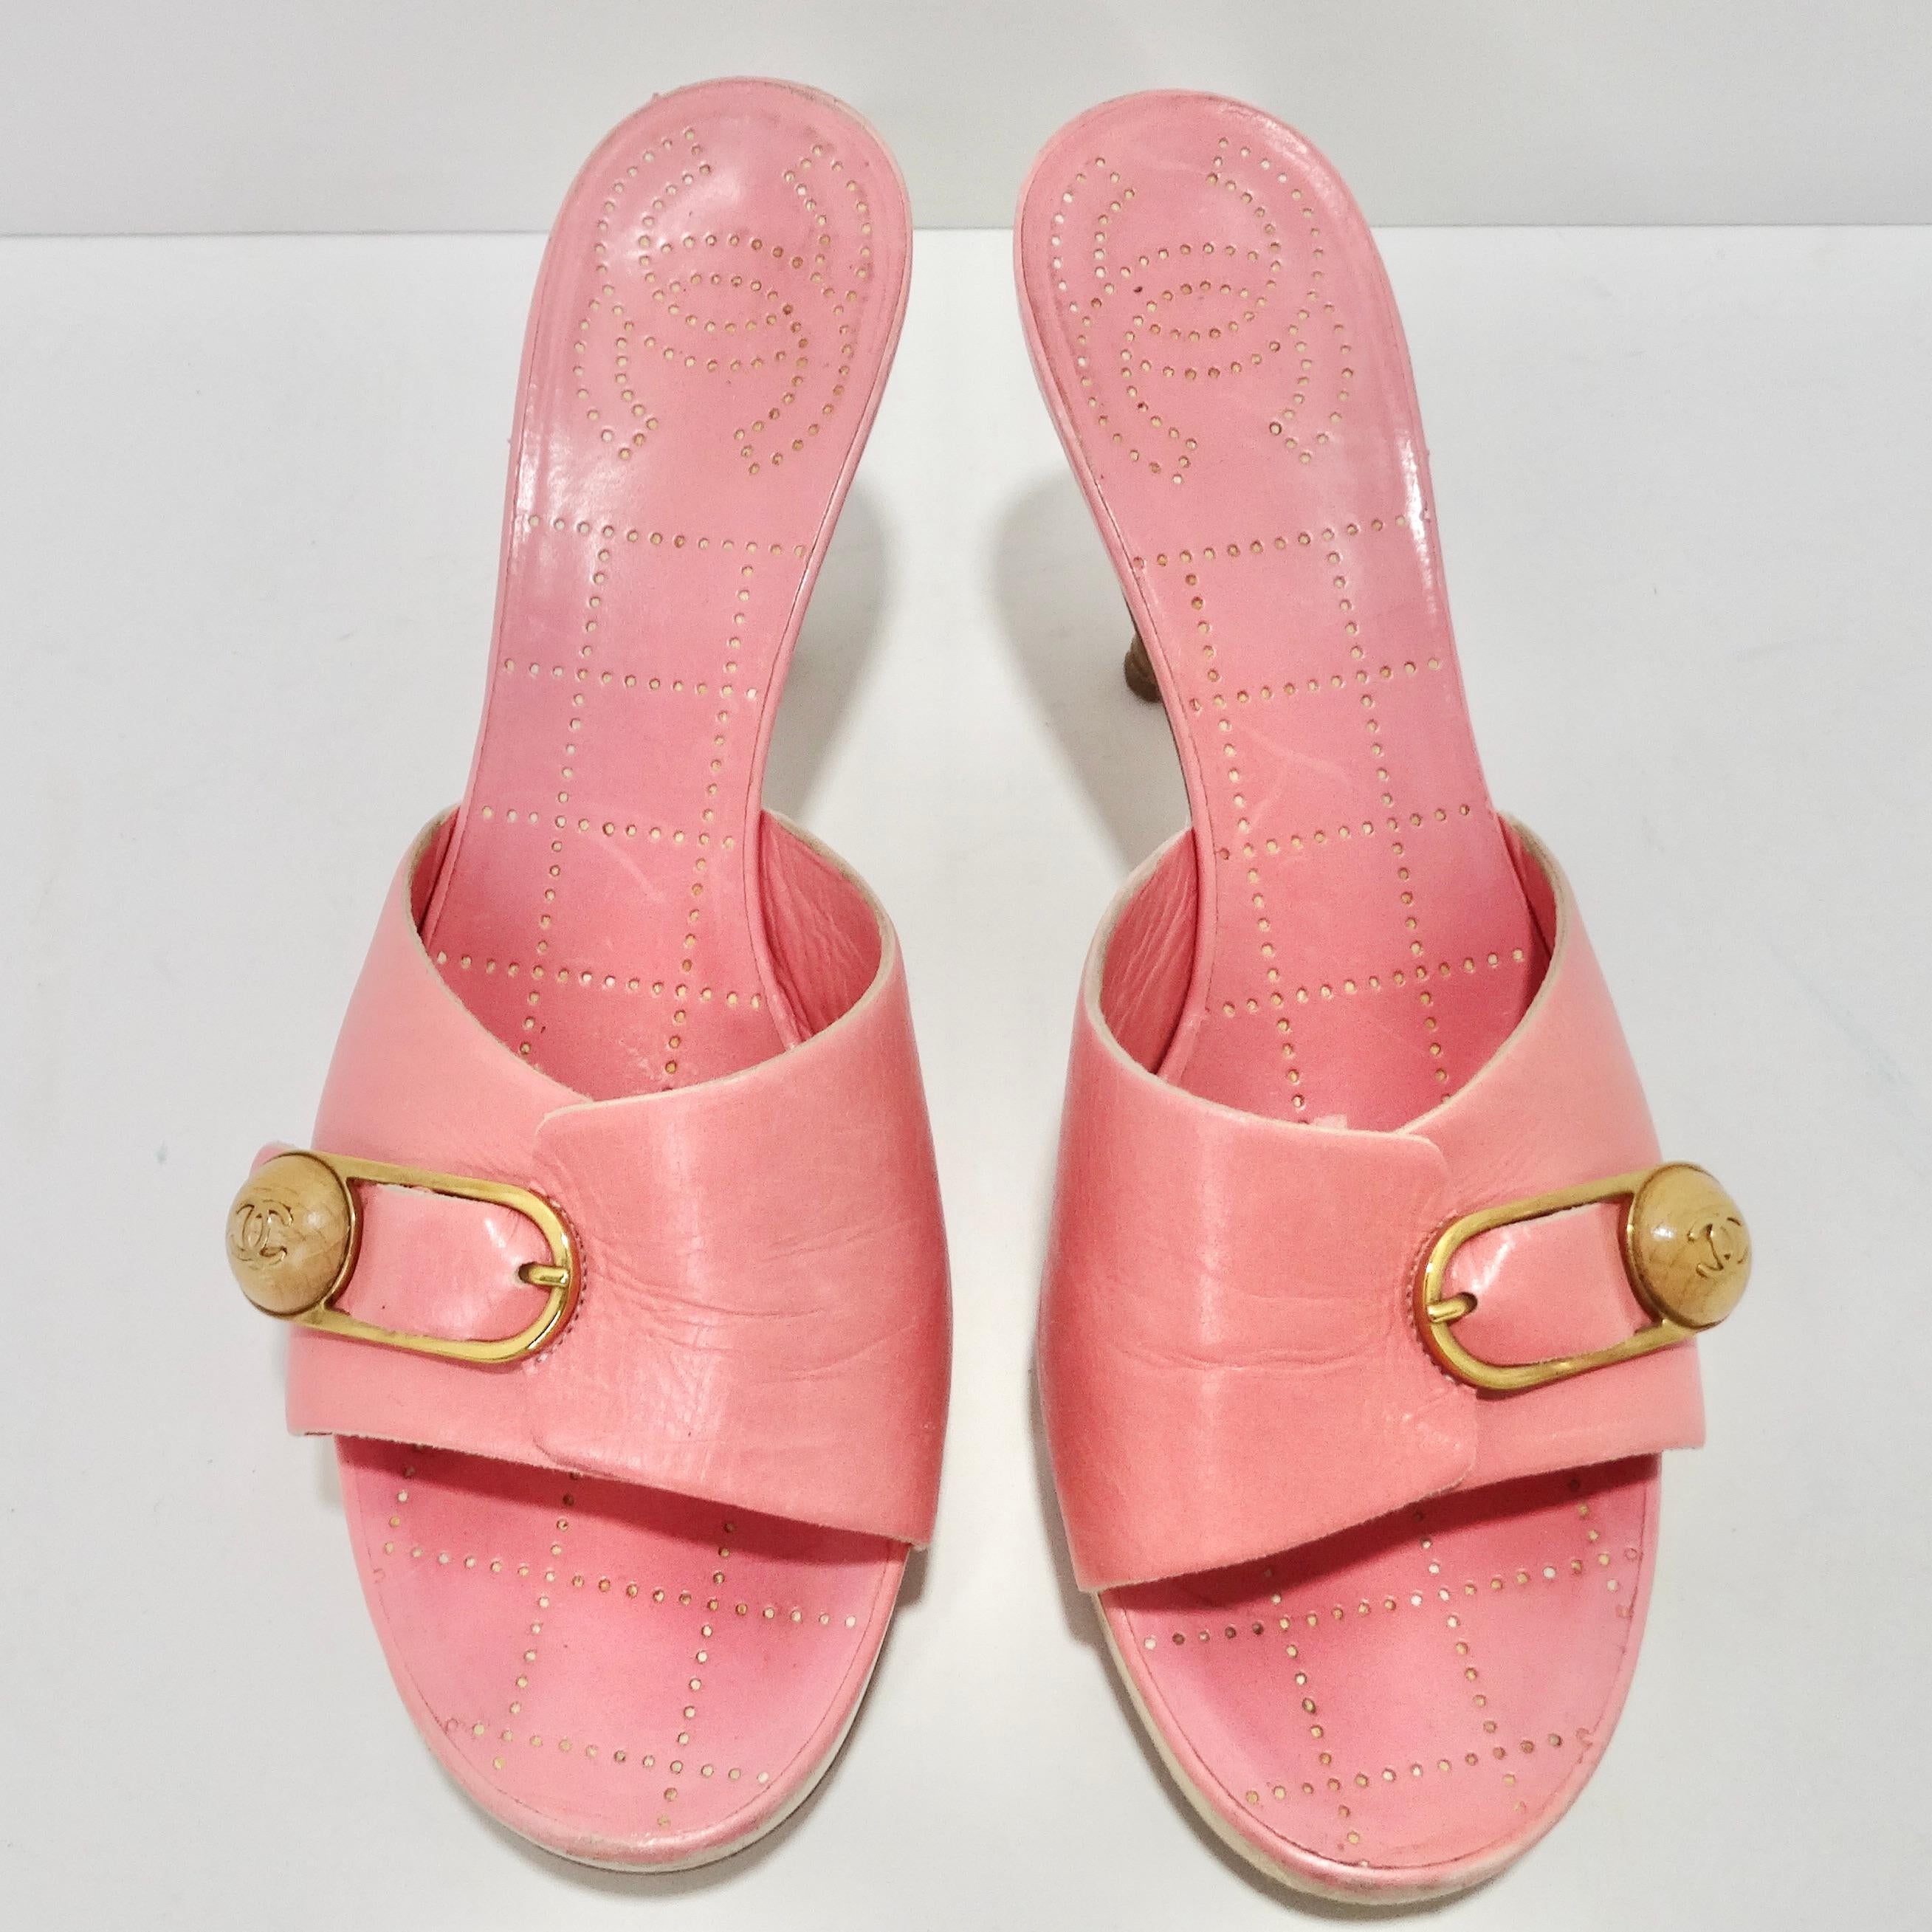 Élevez votre jeu de chaussures avec les mules Chanel en cuir rose vif avec logo CC - un mélange captivant de couleur audacieuse, de marque emblématique et de style d'inspiration vintage. Ces mules sont une pièce de choix qui allie sans effort un